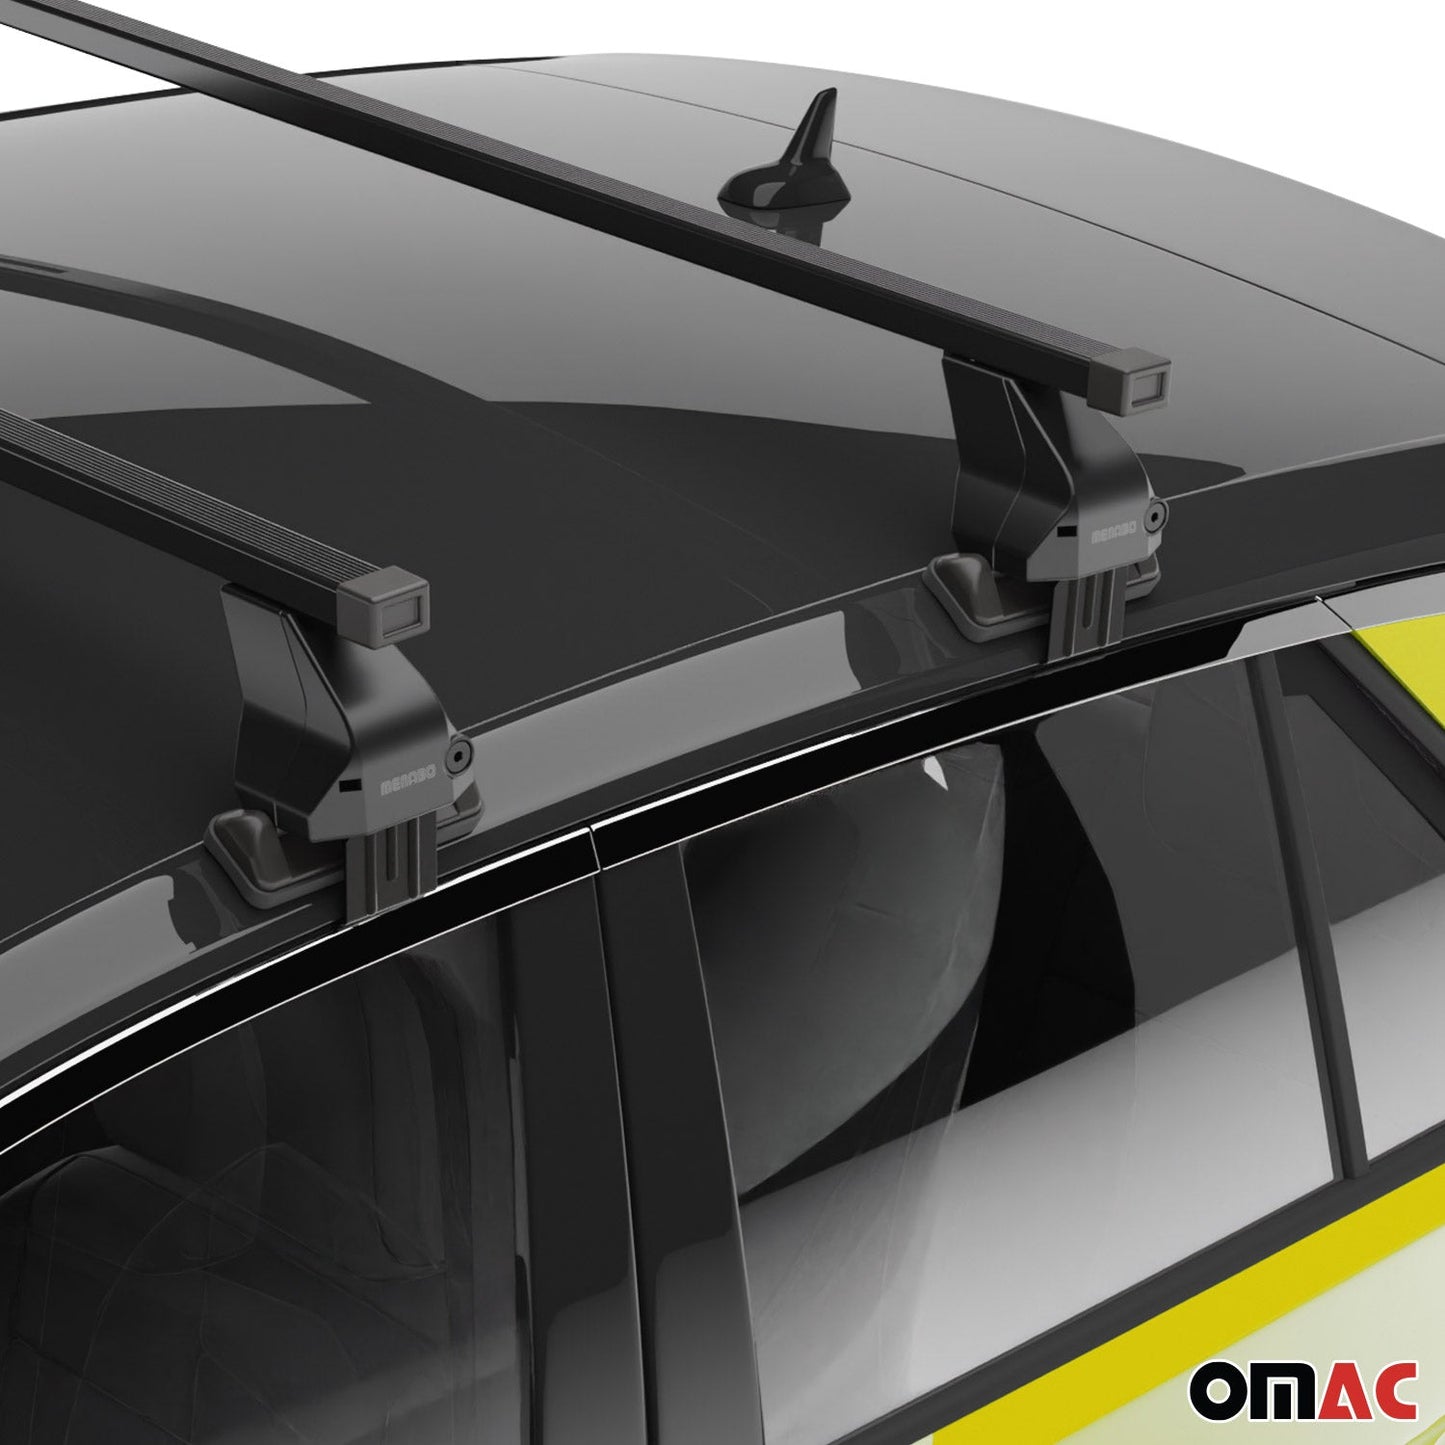 OMAC Smooth Roof Racks Cross Bars Carrier for Honda Civic 2016-2021 Black 2x G003548